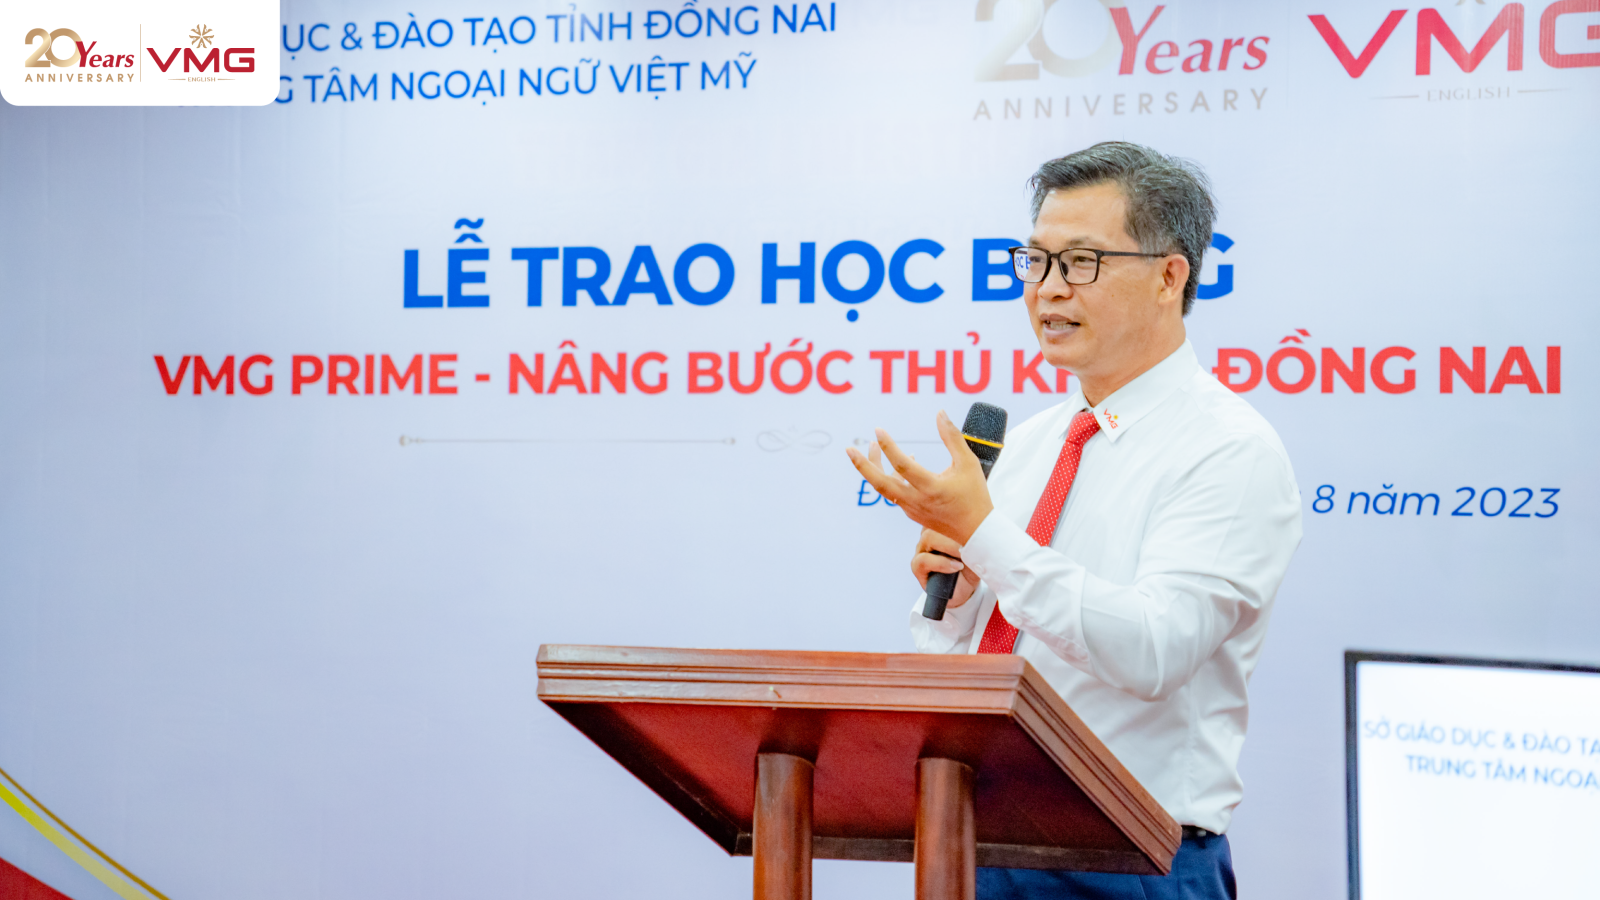 Ông Nguyễn Quốc Khánh - Chủ tịch kiêm Tổng Giám đốc Tập đoàn Giáo dục Việt Mỹ VMG phát biểu trong buổi lễ